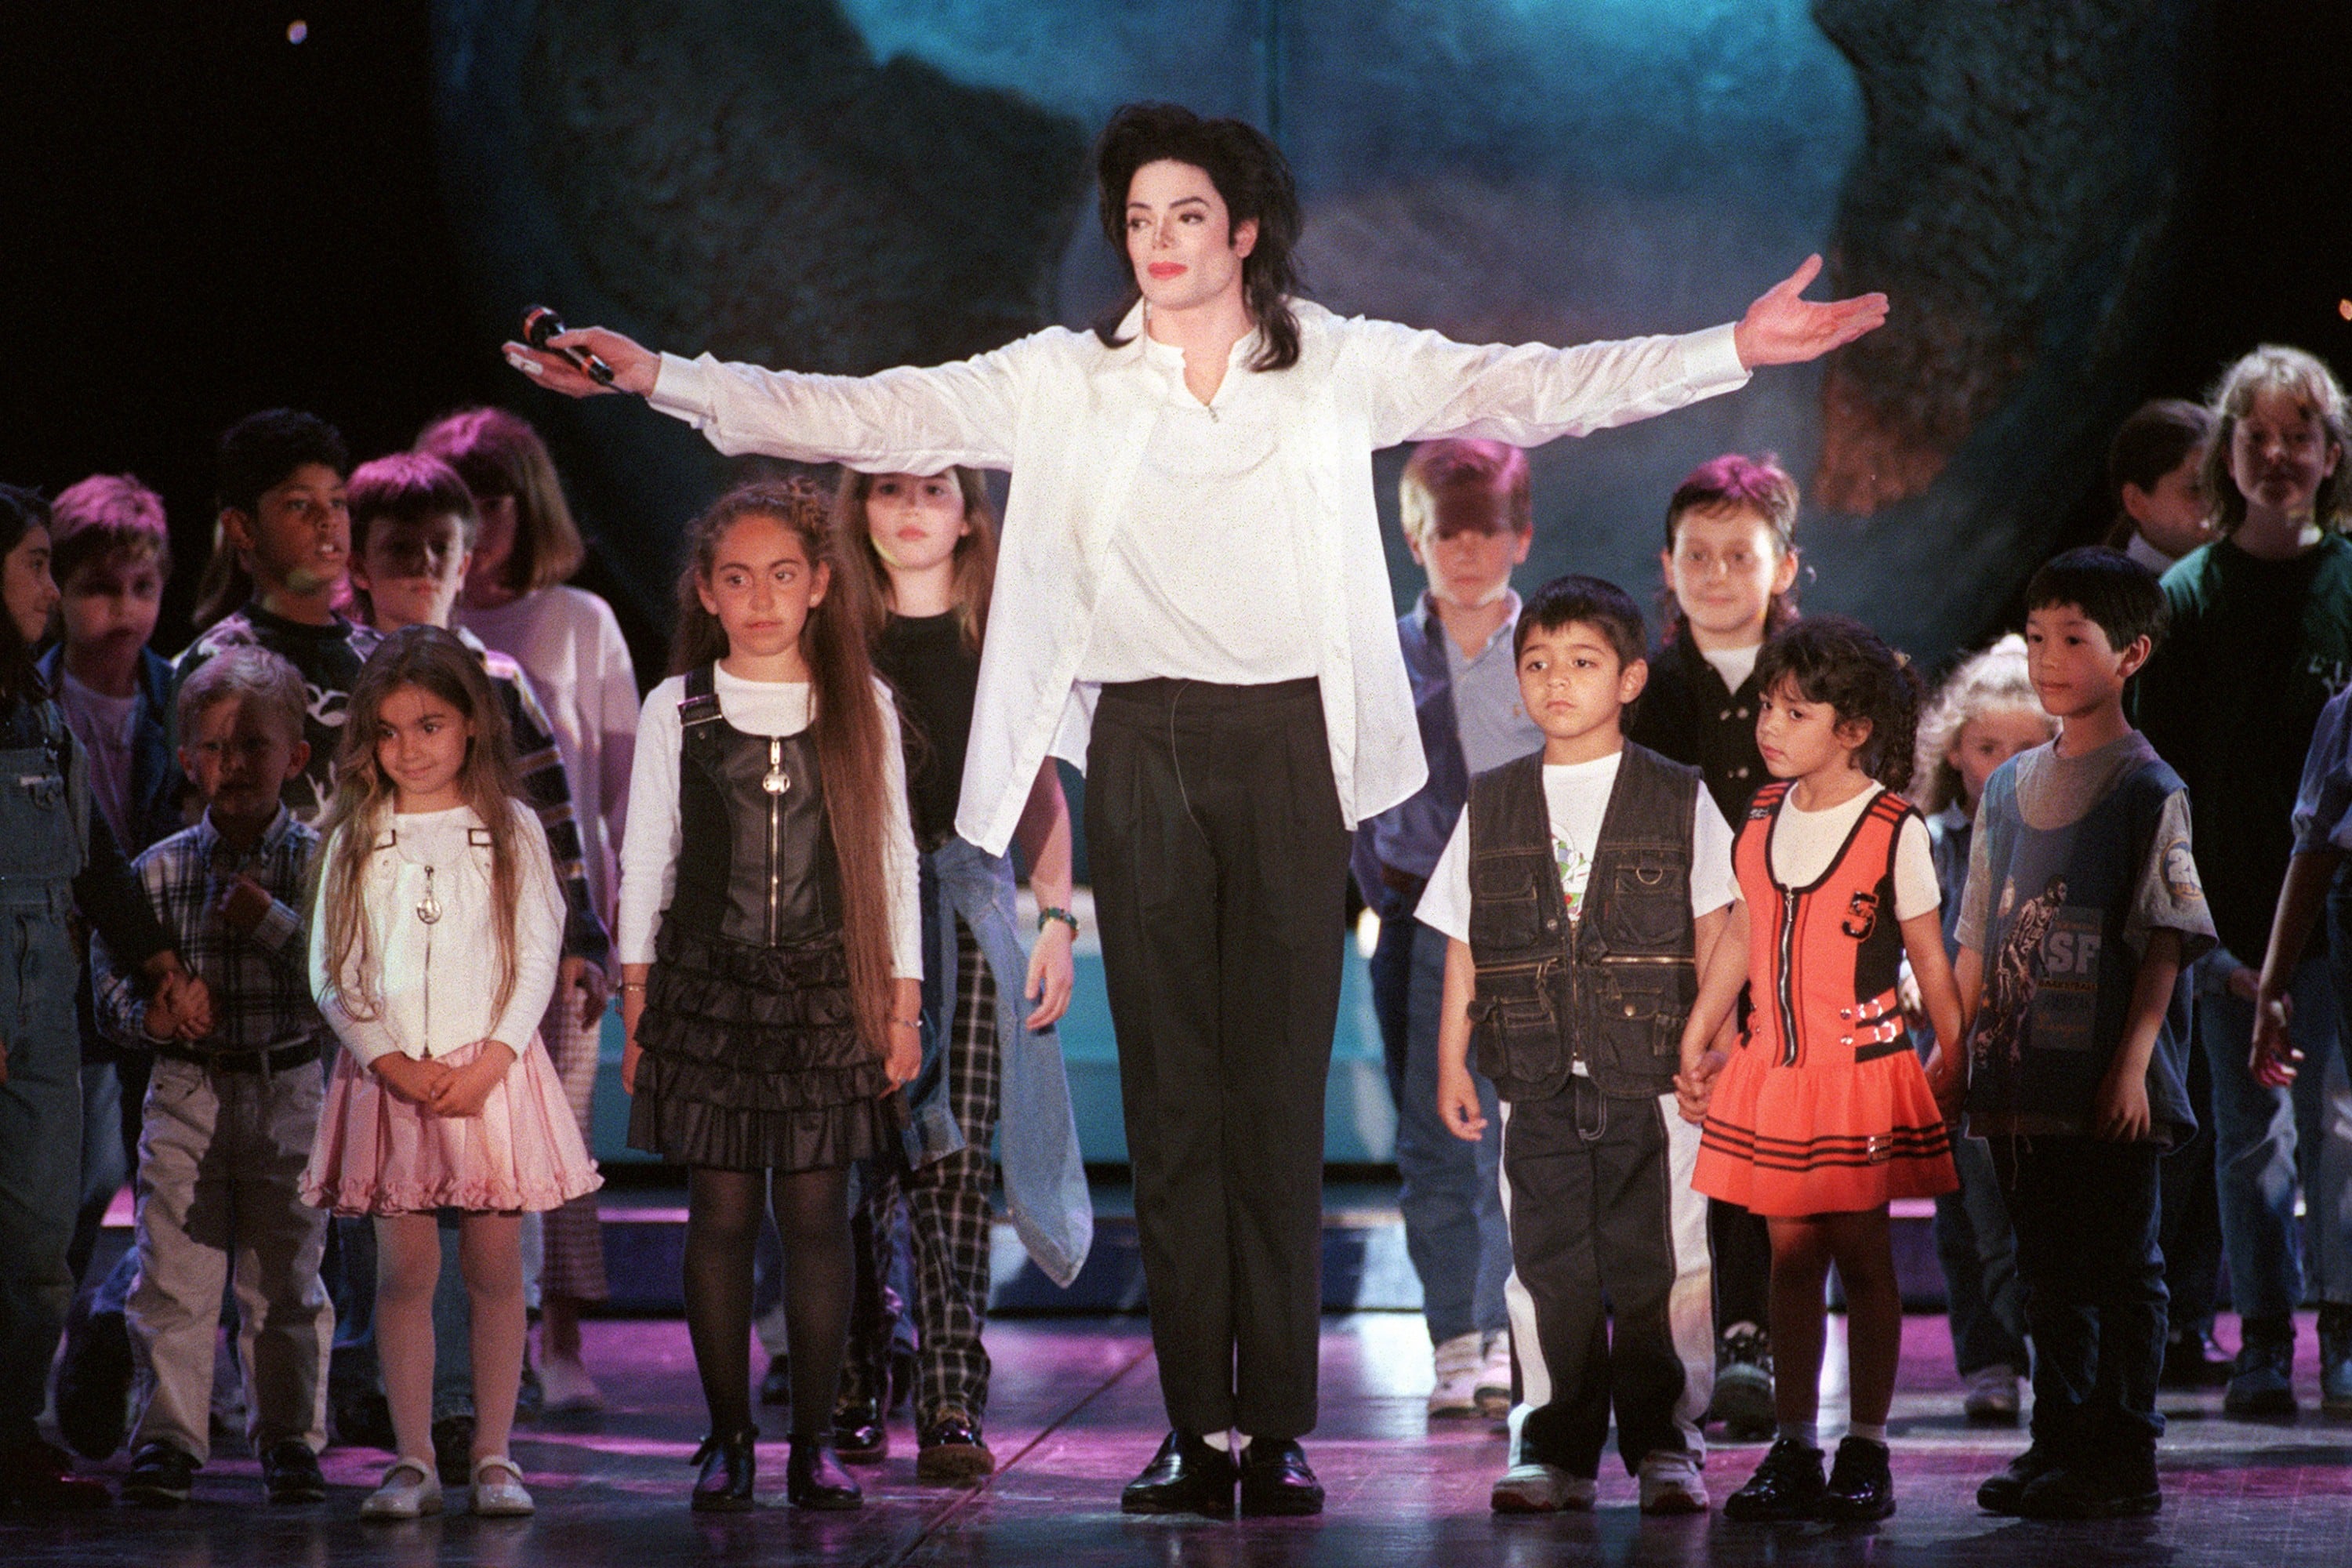 El documental "Leaving Neverland" señala que Michael Jackson abusó sexualmente de dos menores. (Fotos: AFP)